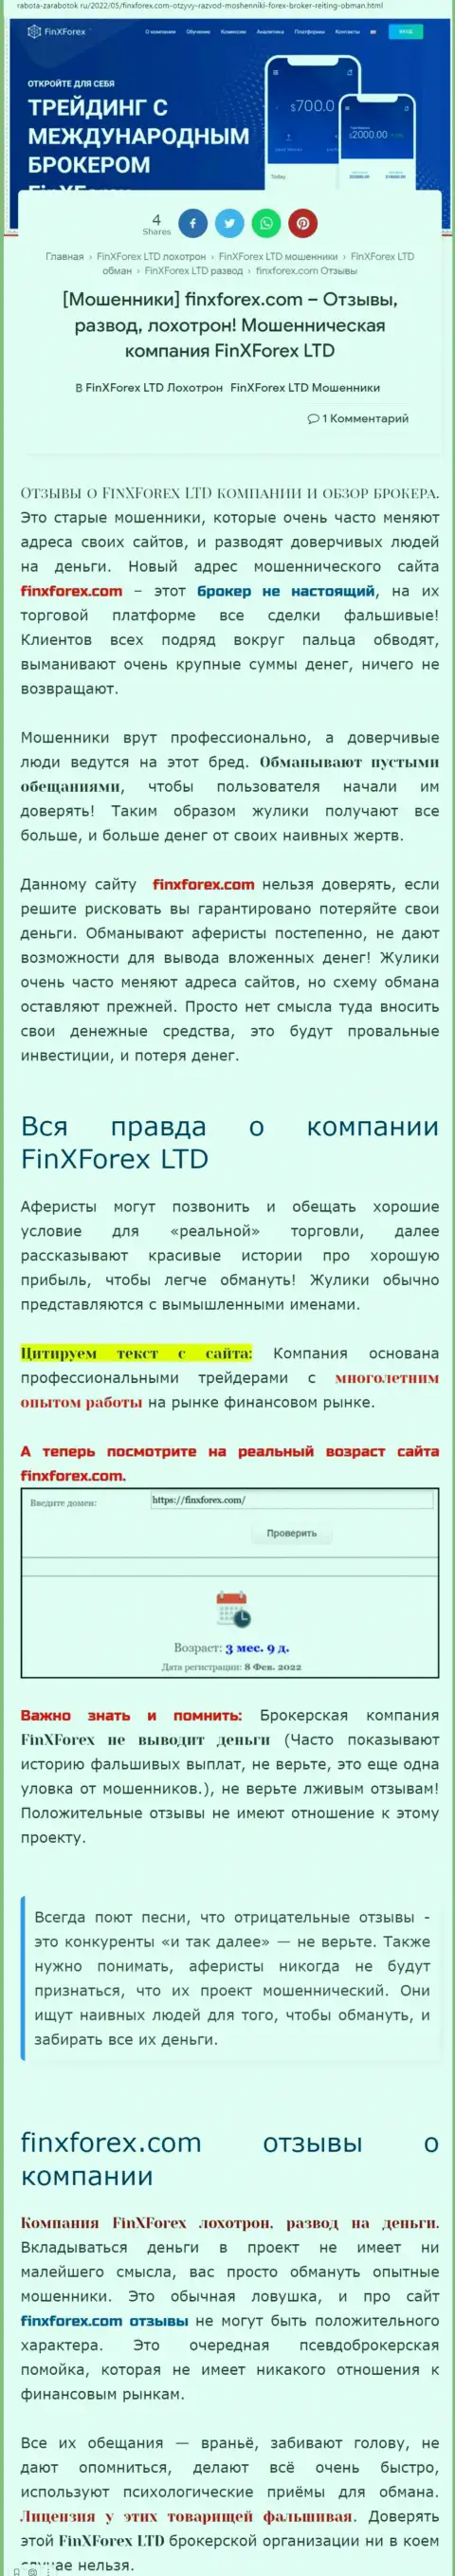 Создатель обзорной статьи о FinXForex говорит, что в конторе Фин Икс Форекс дурачат